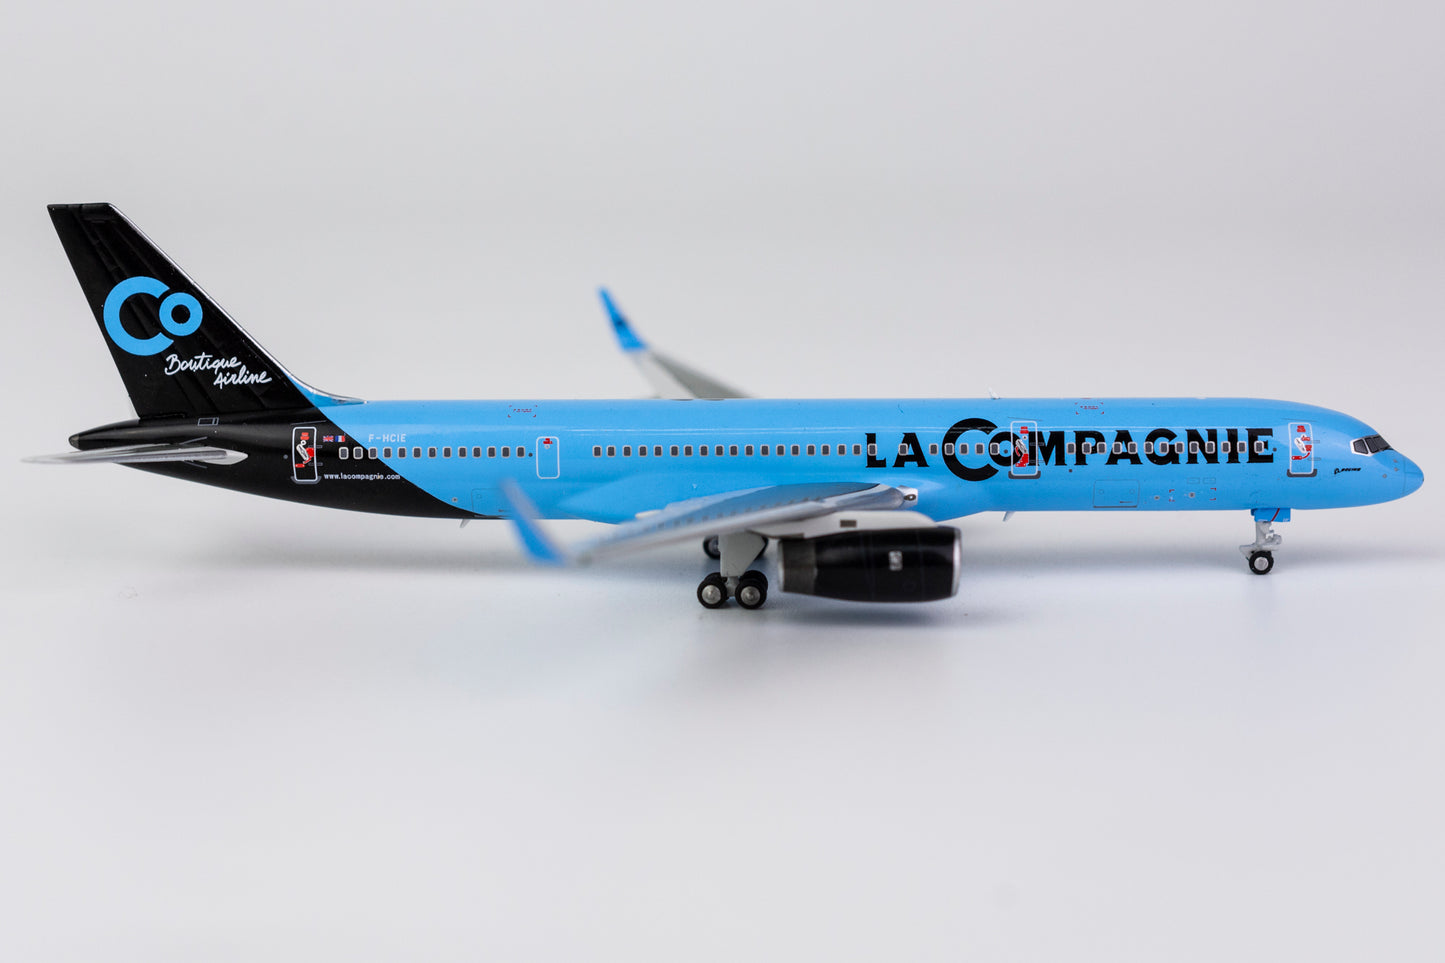 1:400 NG Models La Compagnie Boeing 757-200 F-HCIE 53161